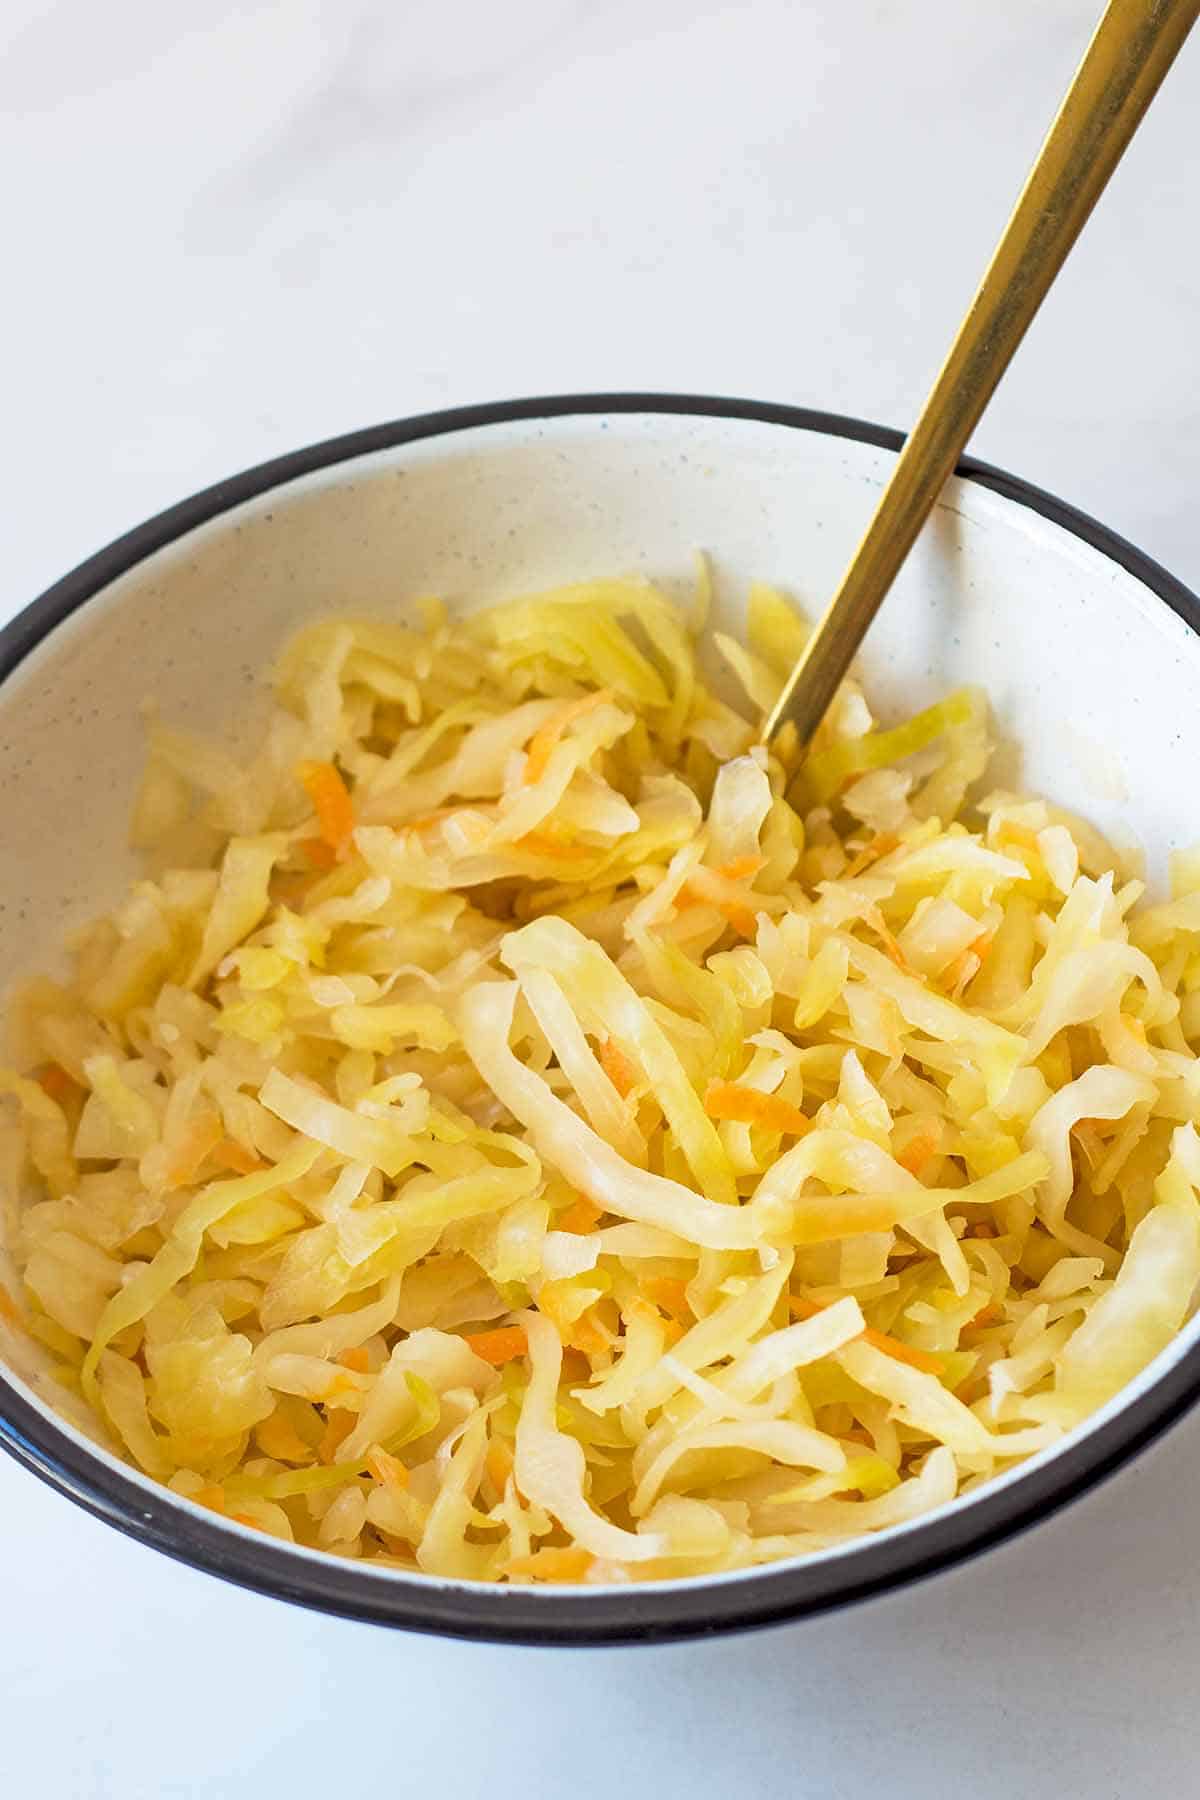 Homemade sauerkraut in white serving bowl with golden fork